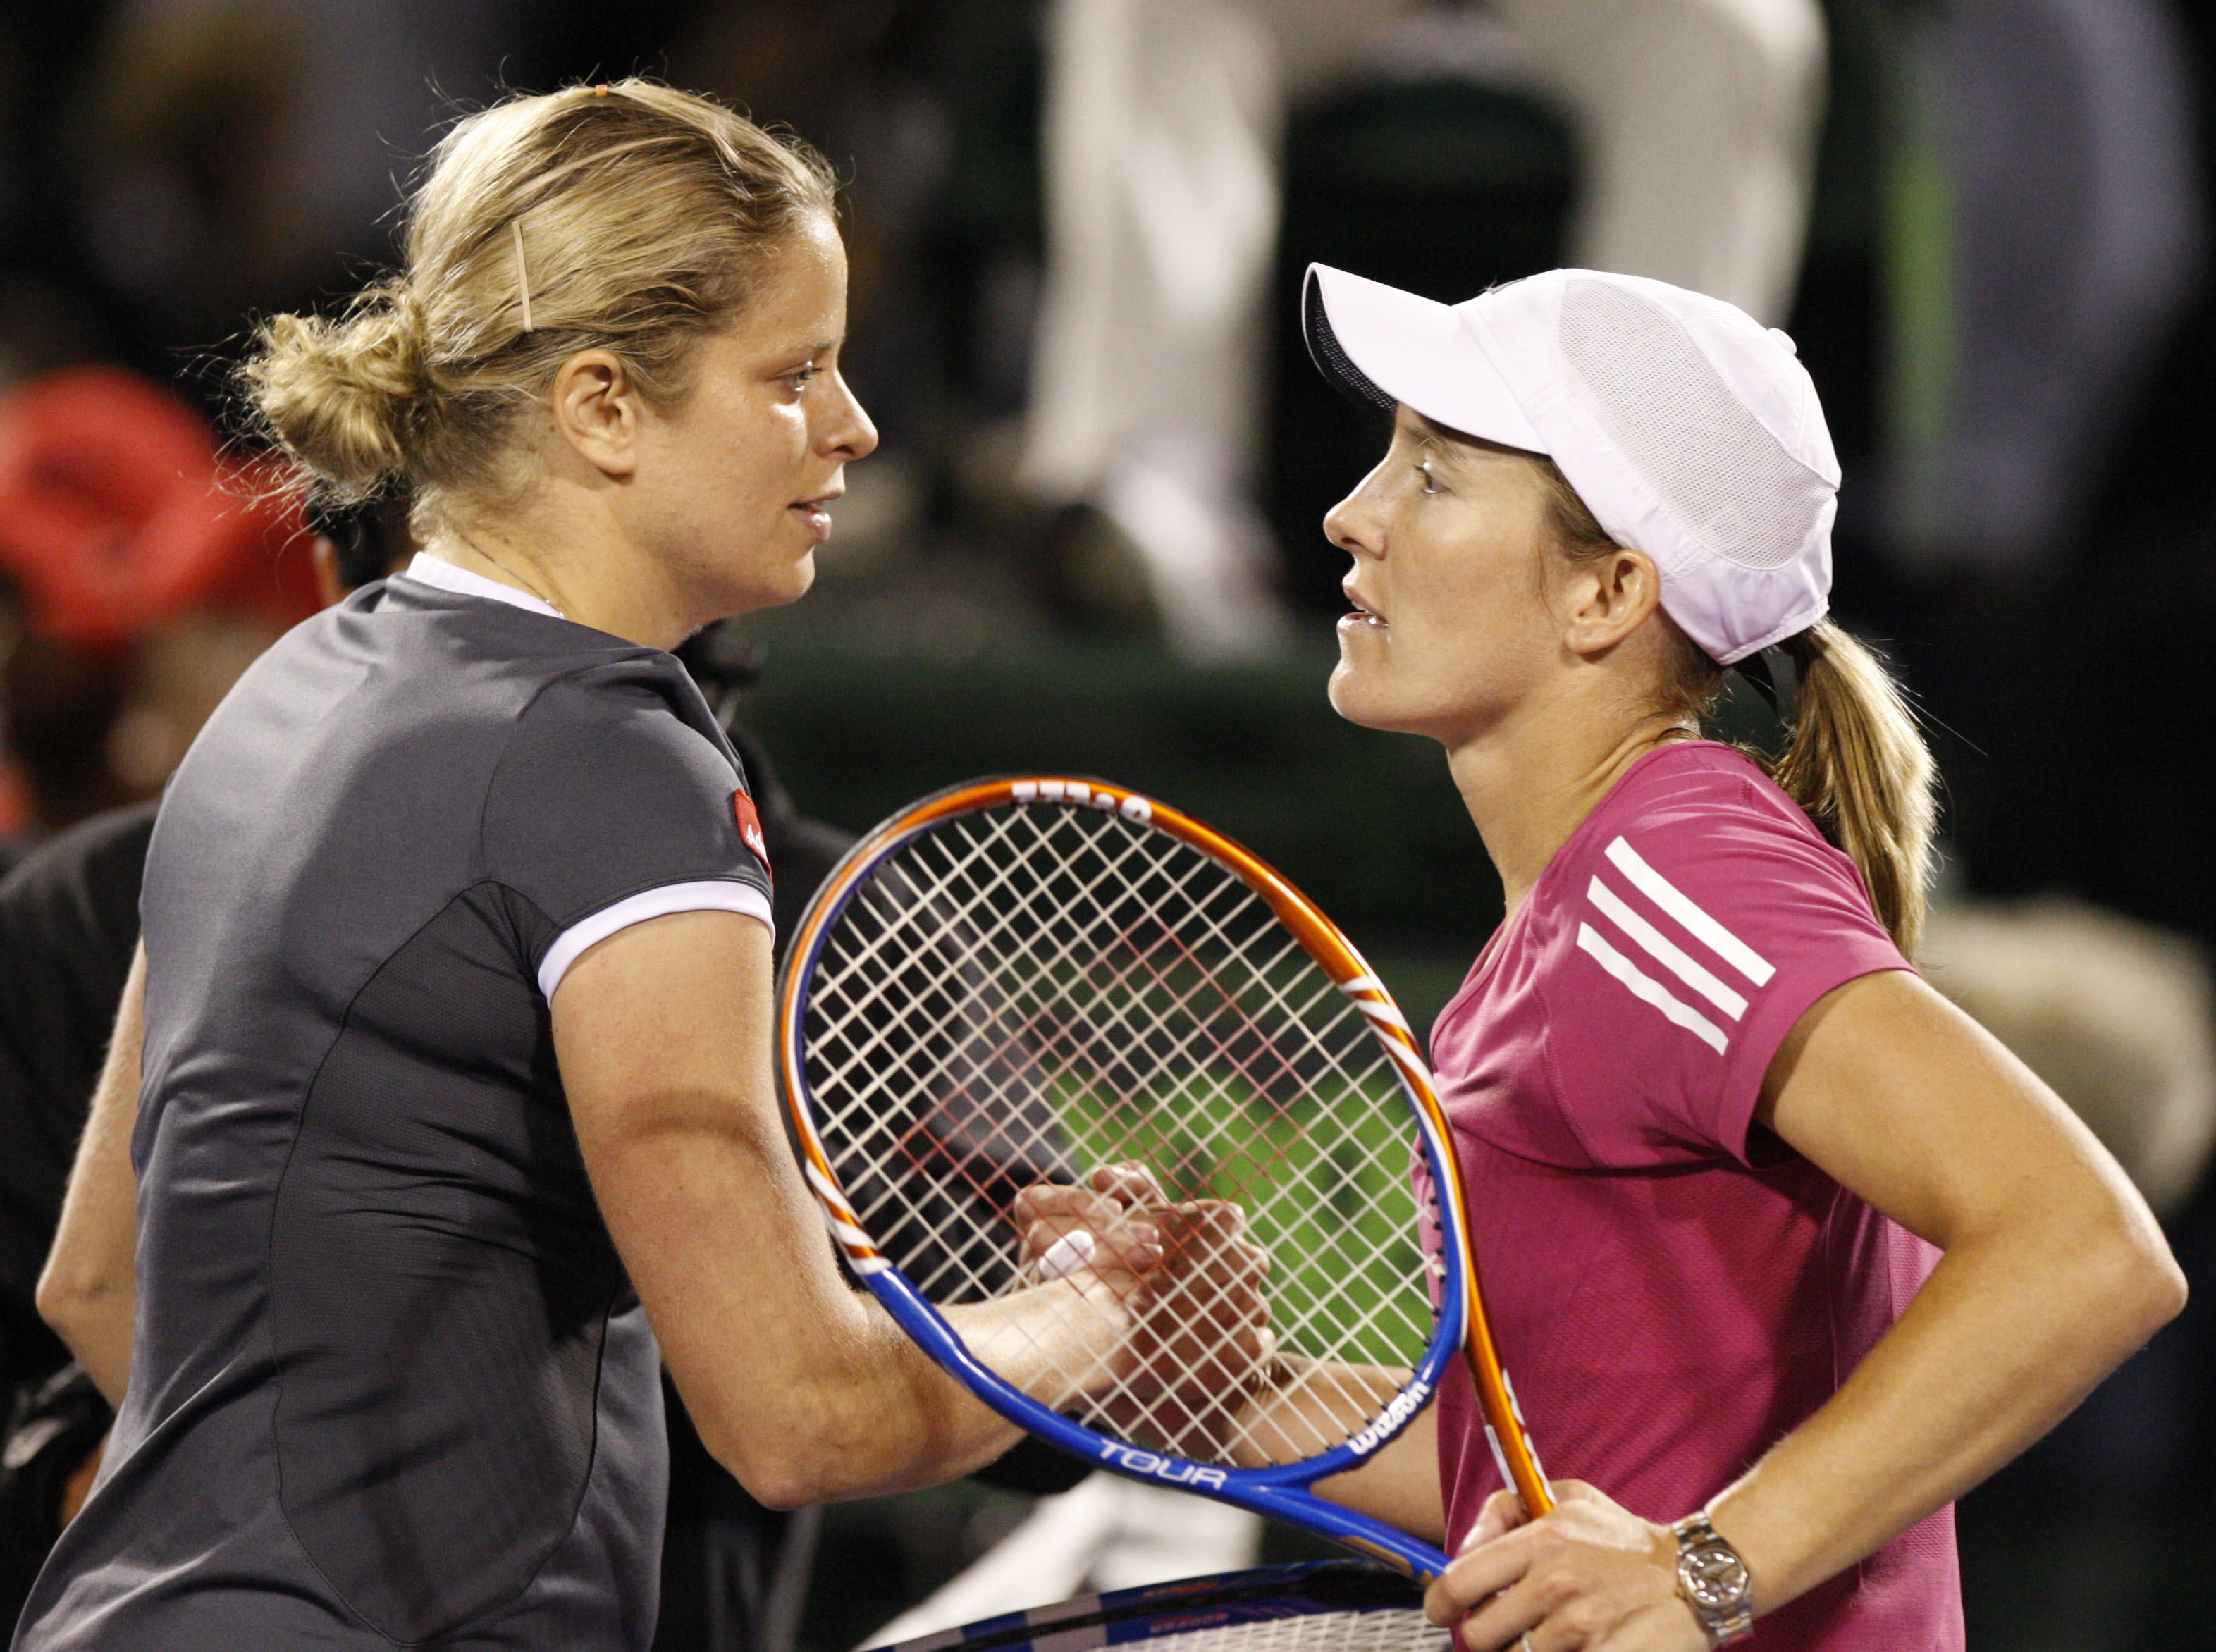 Tennis, Kim Clijsters, WTA, Justine Henin